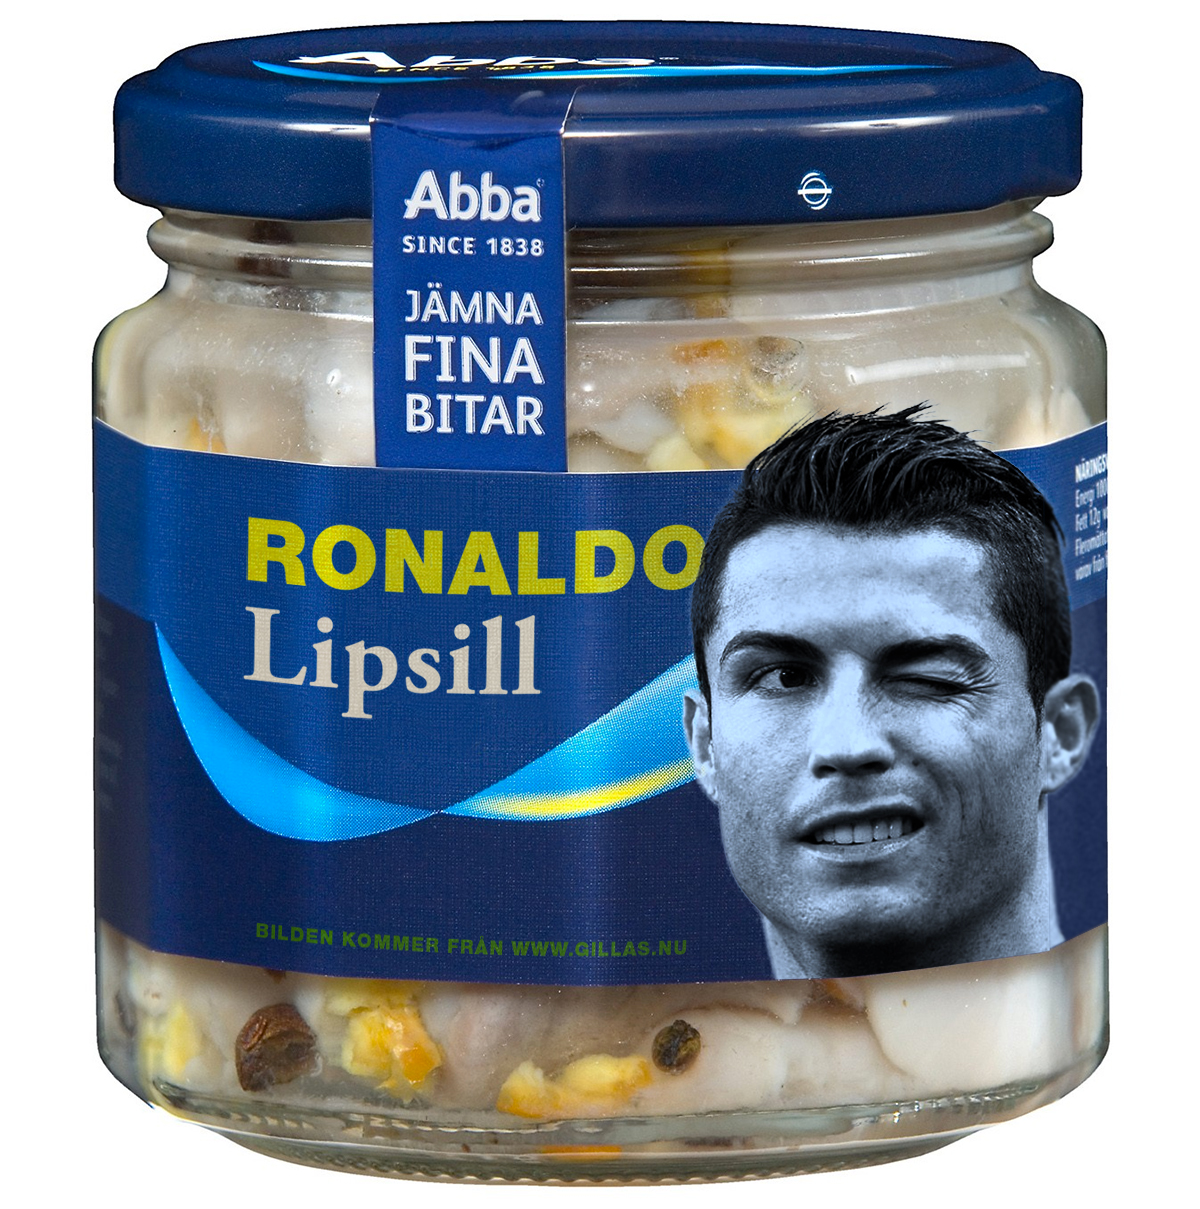 Sillburk med Cristiano Ronaldo - Eftersom han r en lipsill